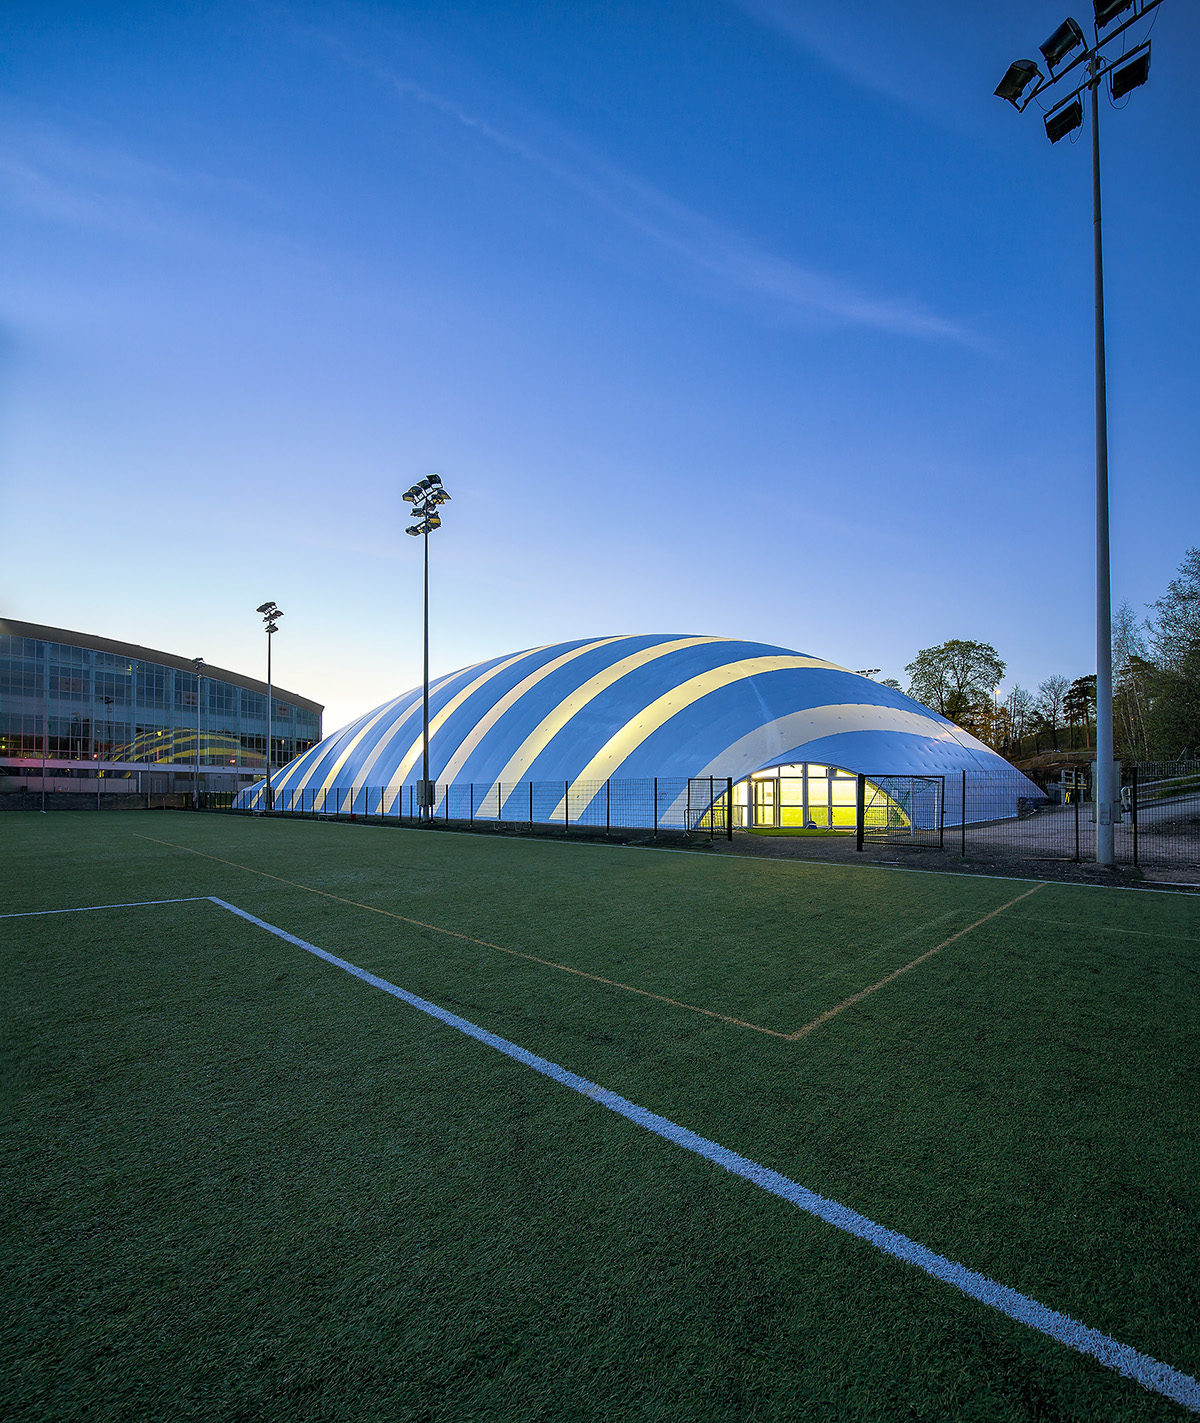 Finnish Architecture - Football stadium on Behance